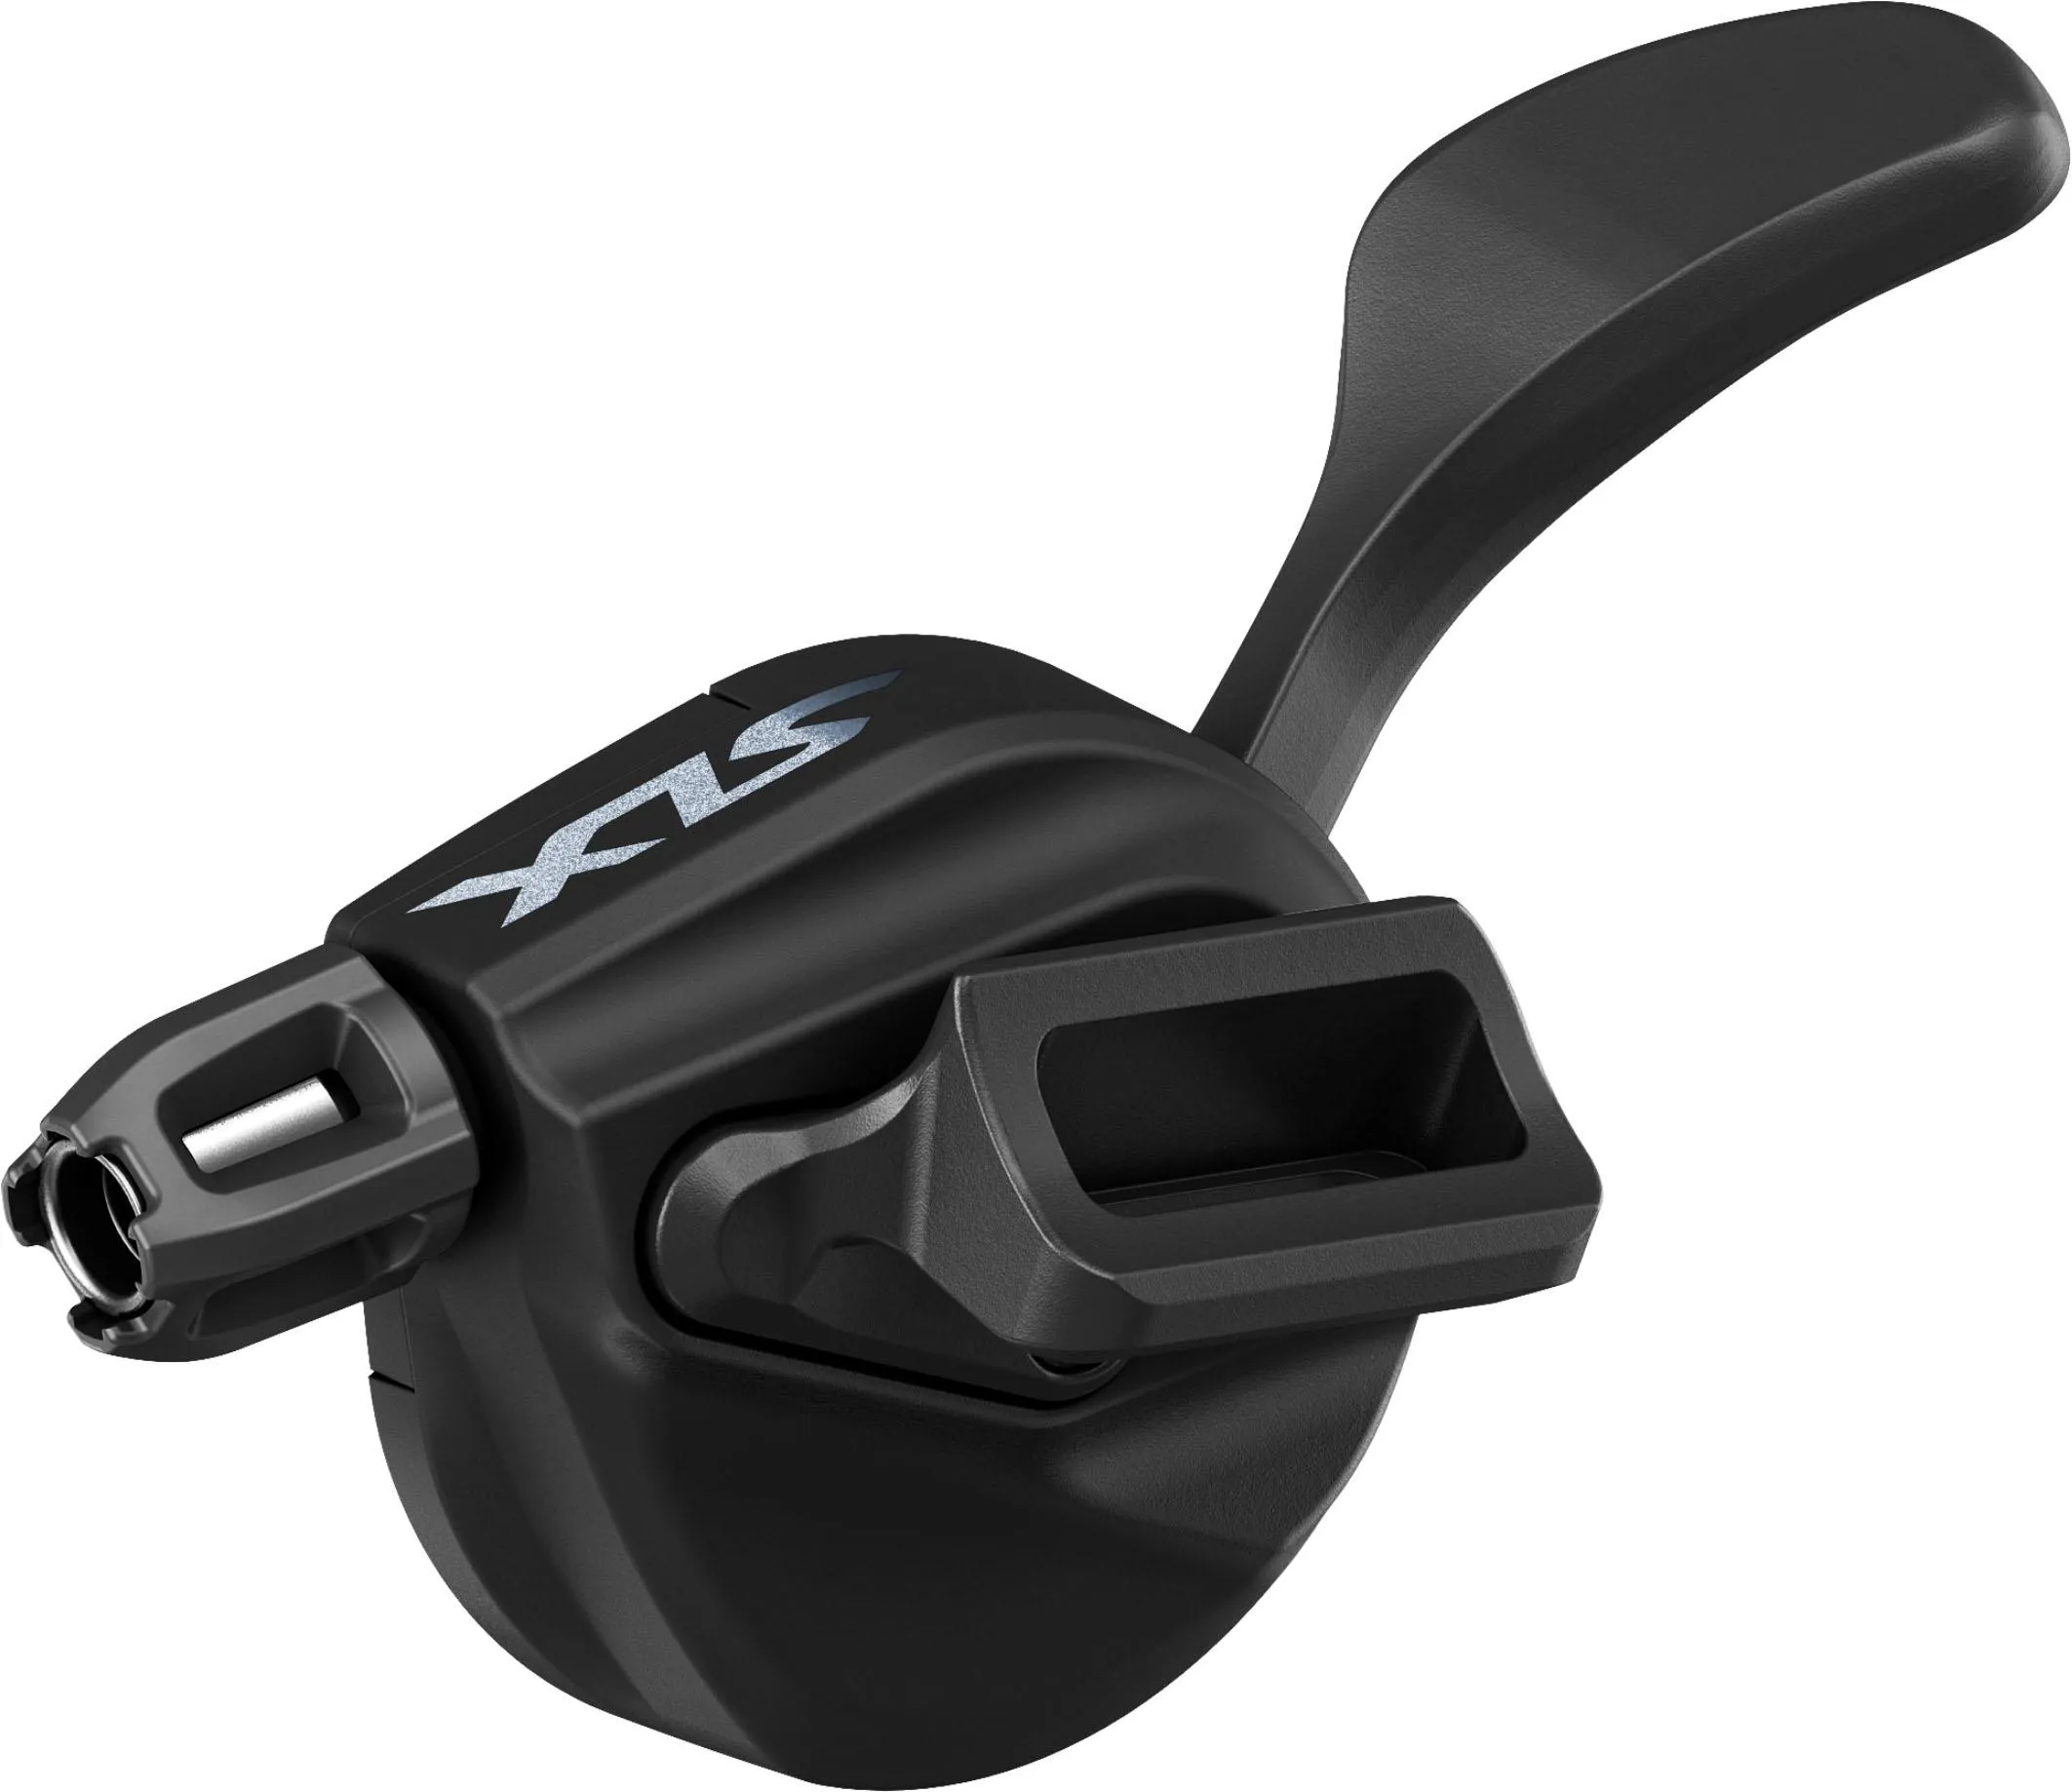  SLX M7100 12 Speed MTB Gear Shifter, Black